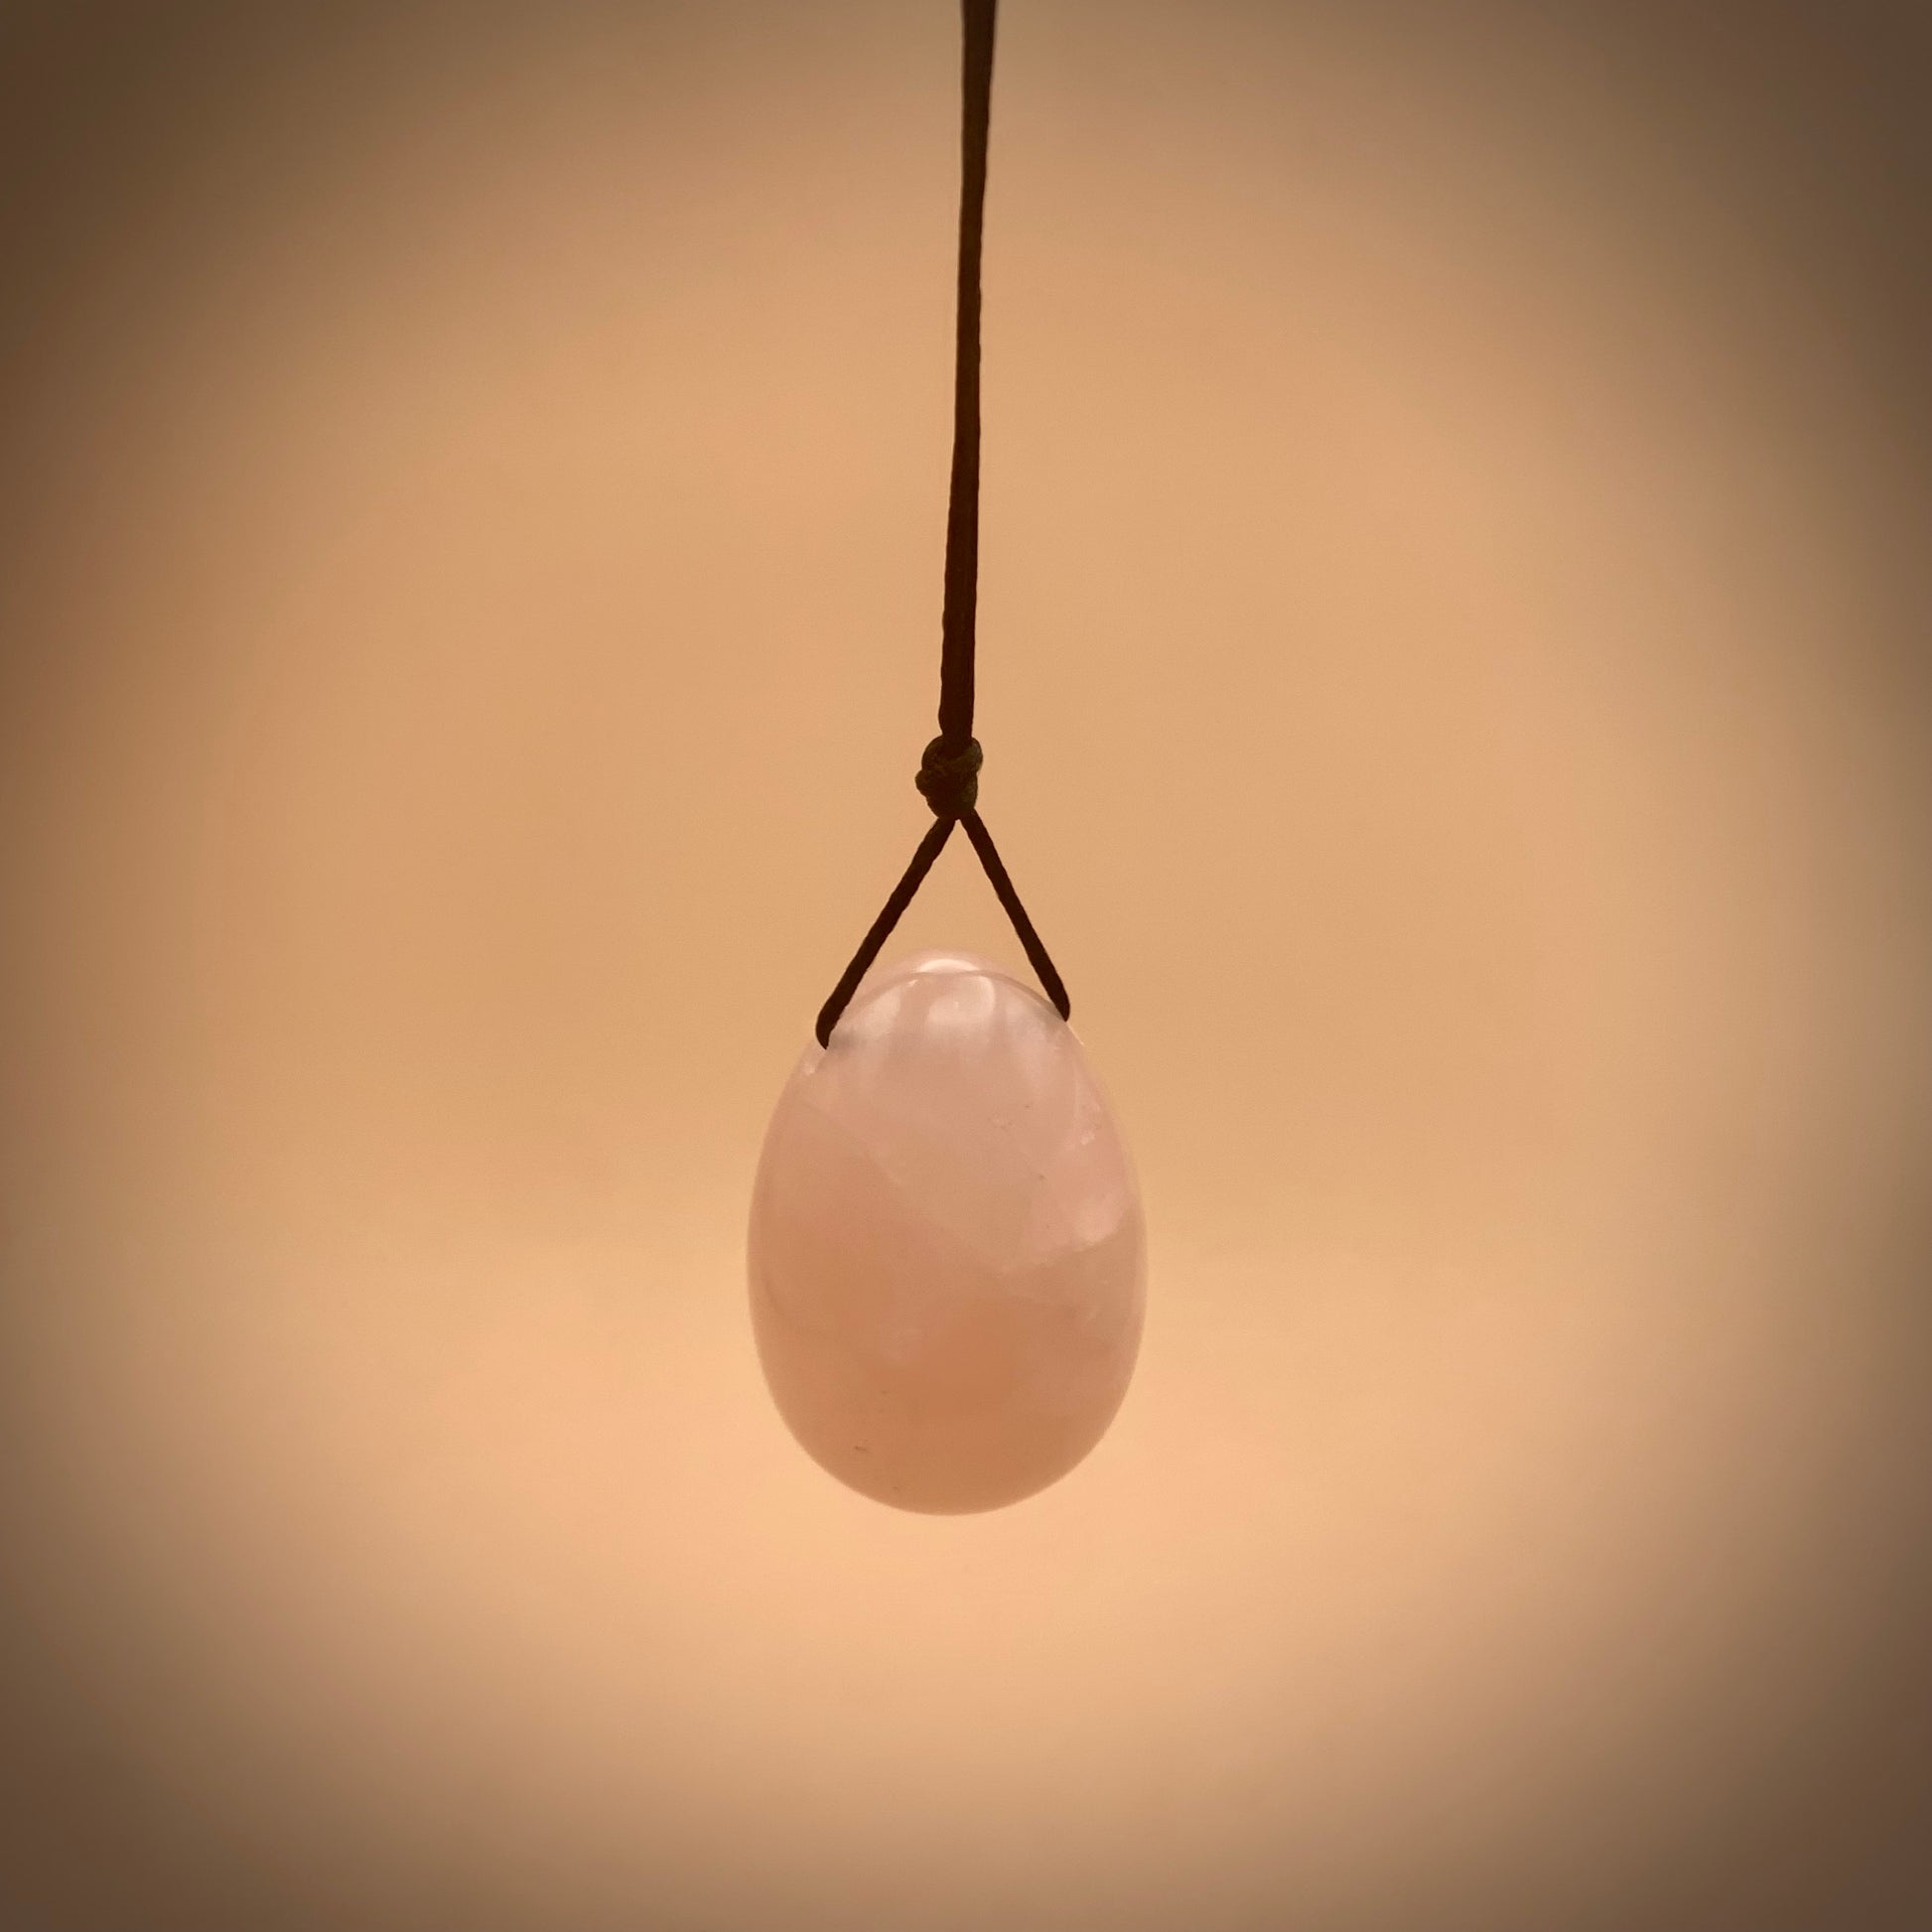 rose quartz crystal egg hanging on satin string